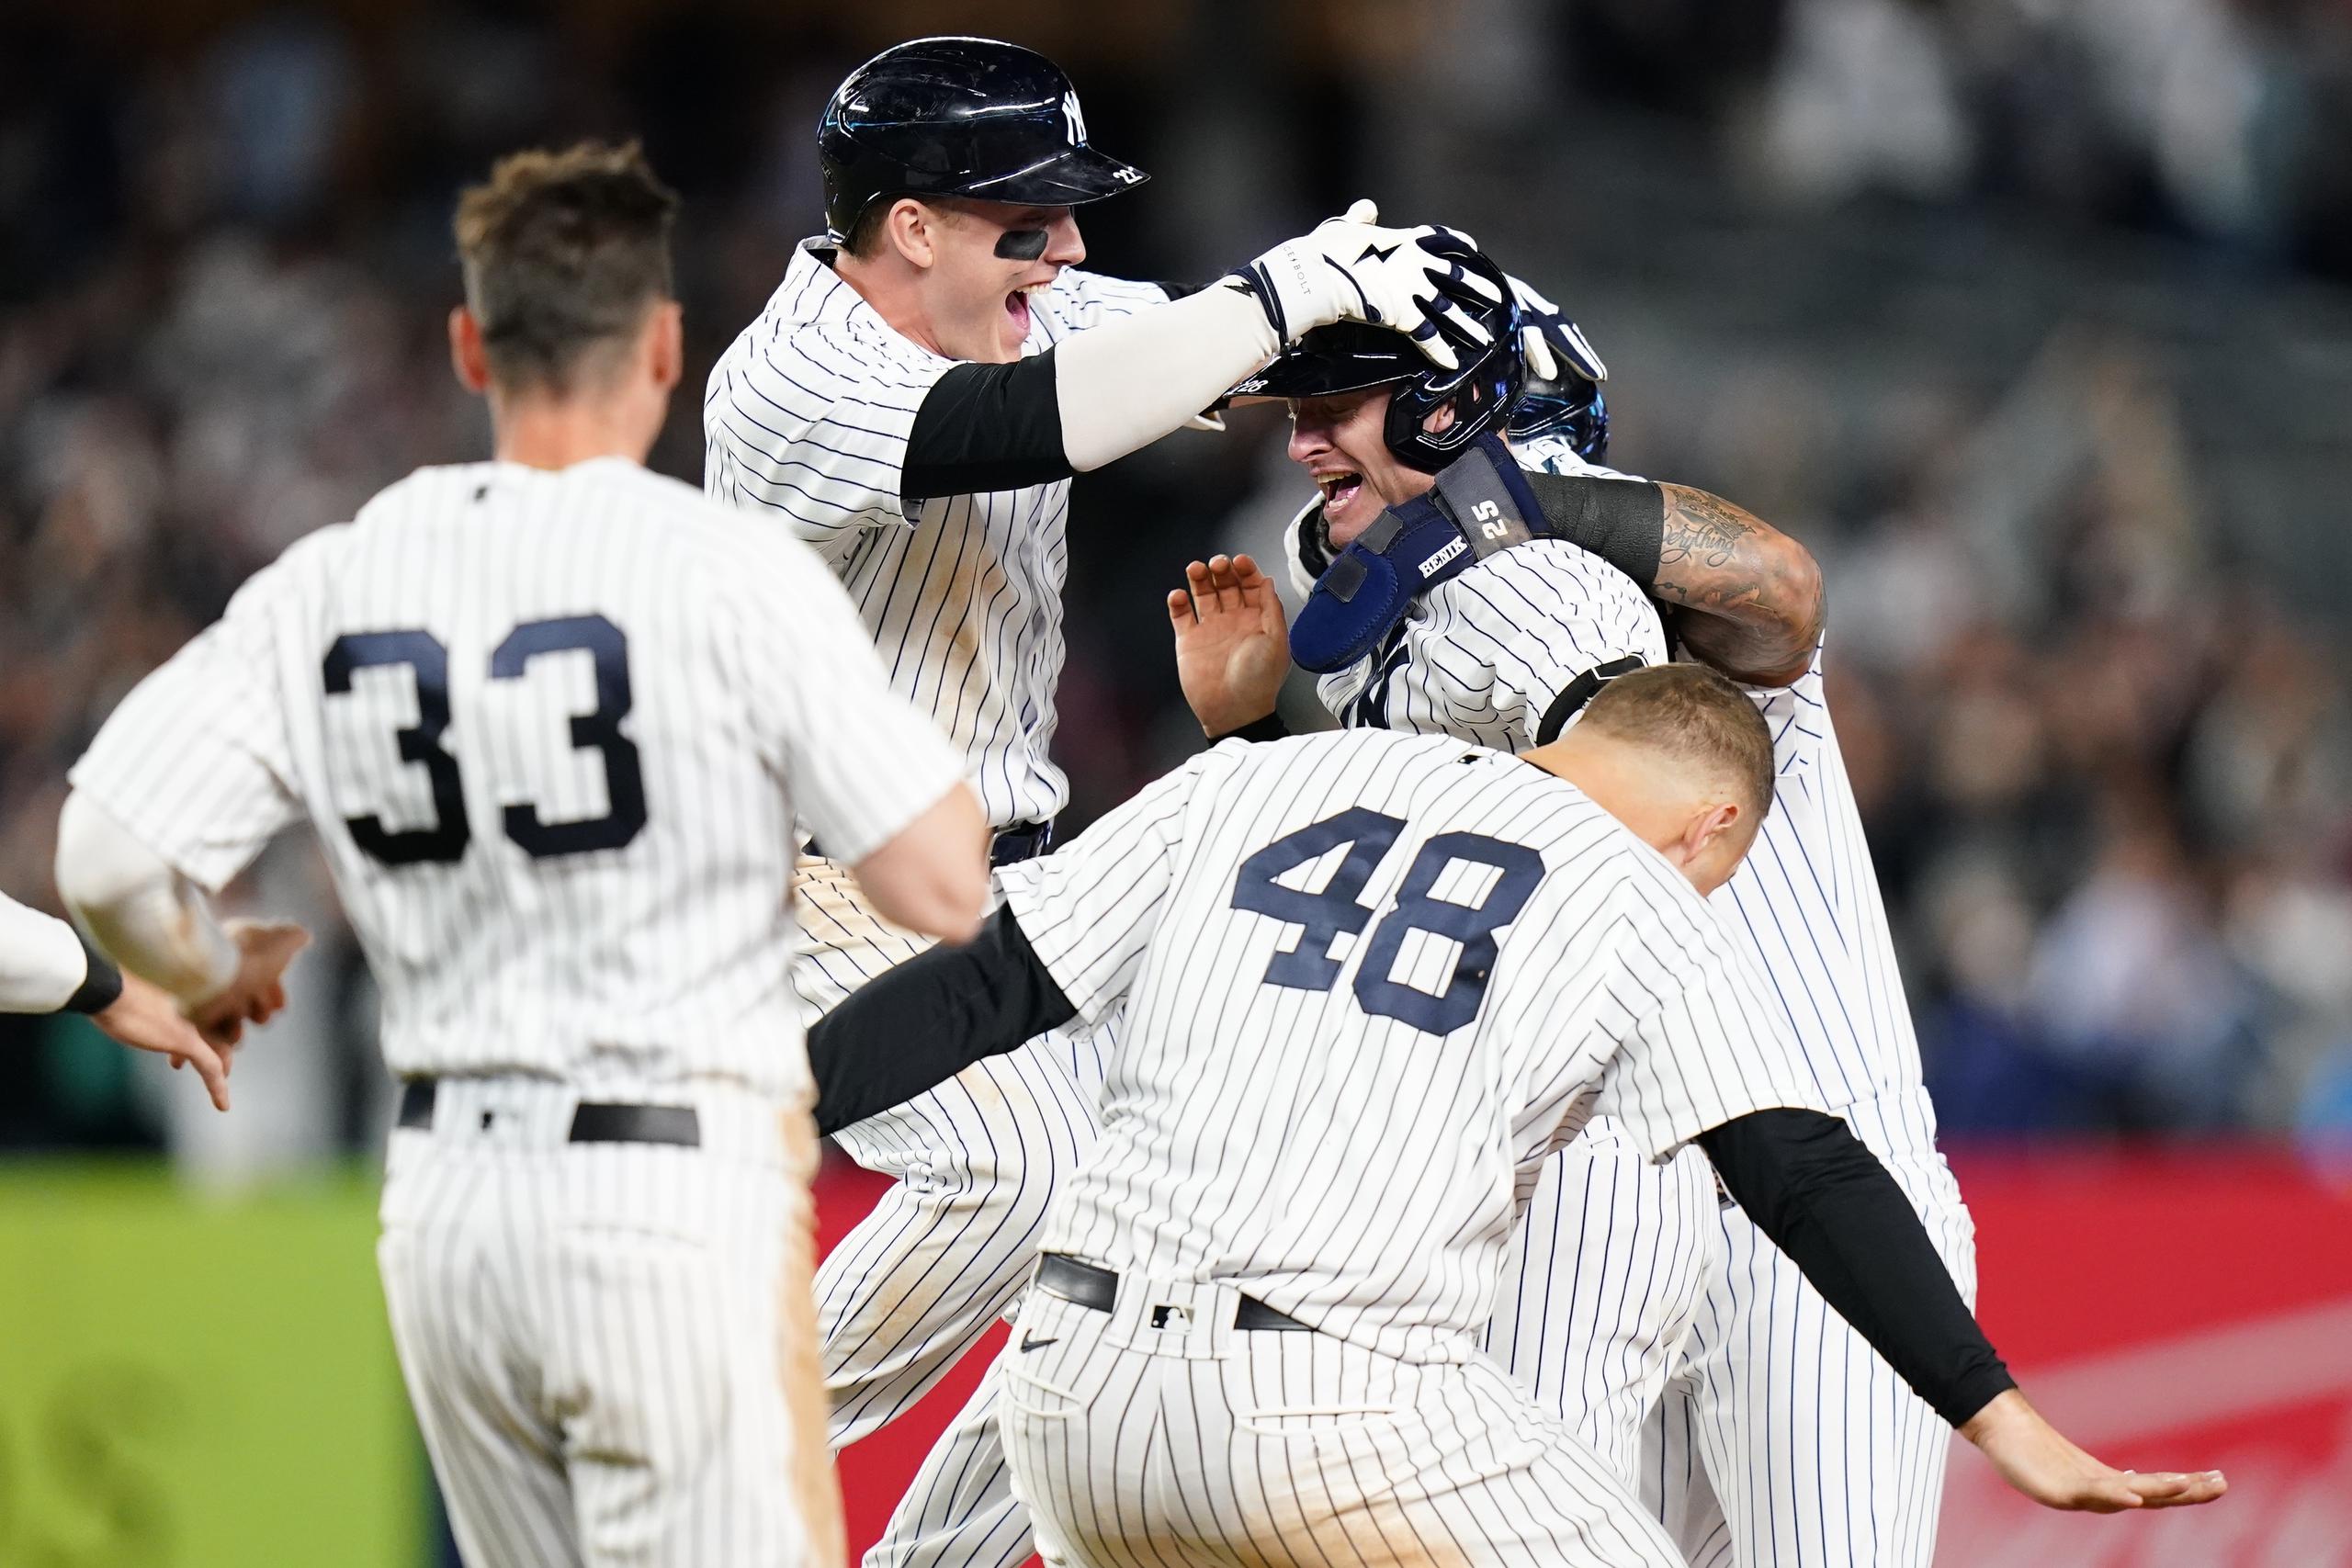 Josh Donaldson, de los Yankees, es alcanzado por sus compañeros de equipo en medio del festejo luego de que Donaldson sacudiera el inatrapable que les dio la victoria 5-4 ante Boston y les diera su boleto a la postemporada.